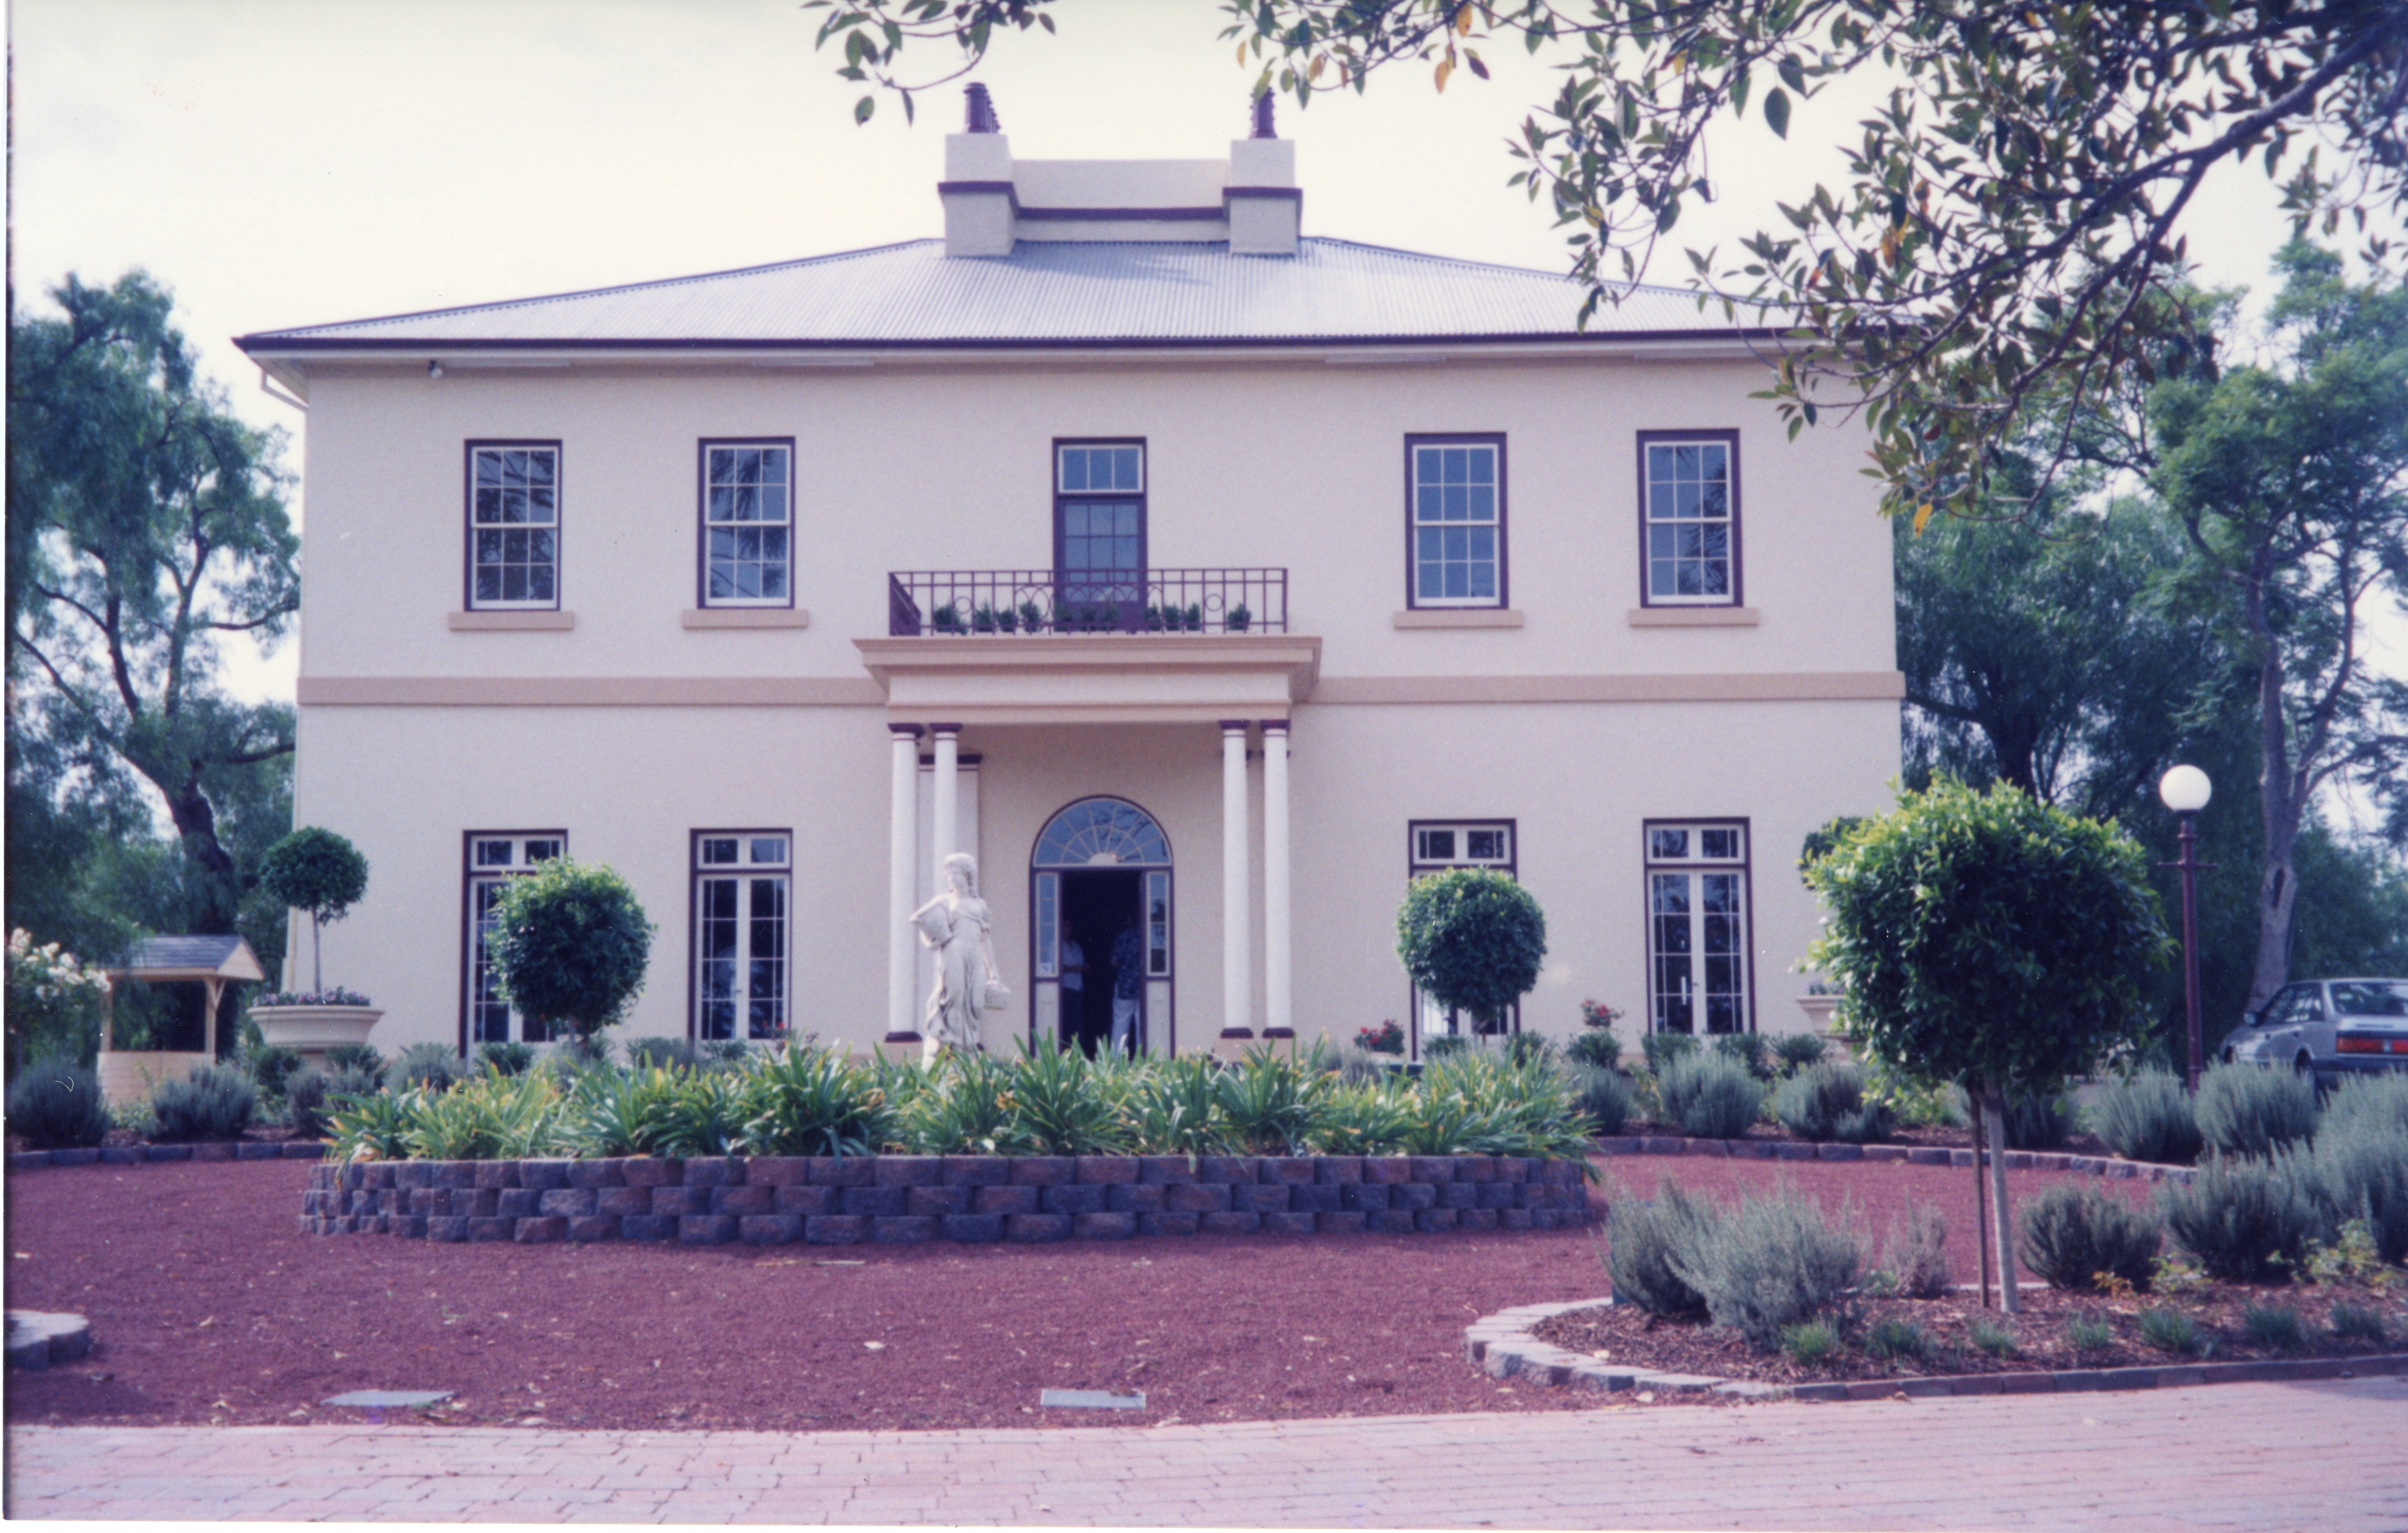 Horningsea House, Horningsea Park Drive, March 1998